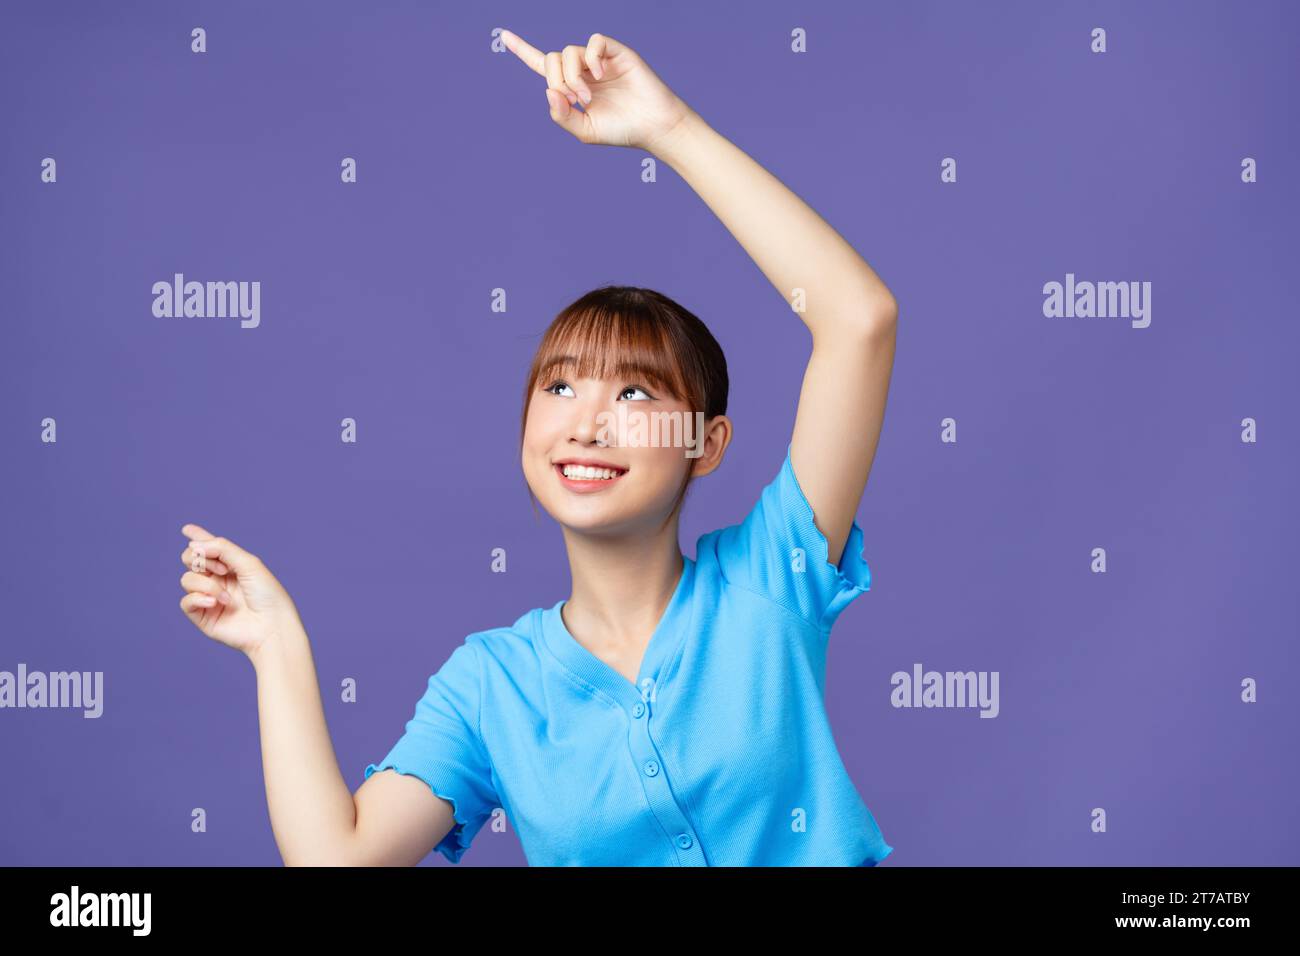 Fühlen Sie die Freude mit einer jungen asiatischen Frau, die auf freien Kopierraum auf violettem Hintergrund zeigt Stockfoto